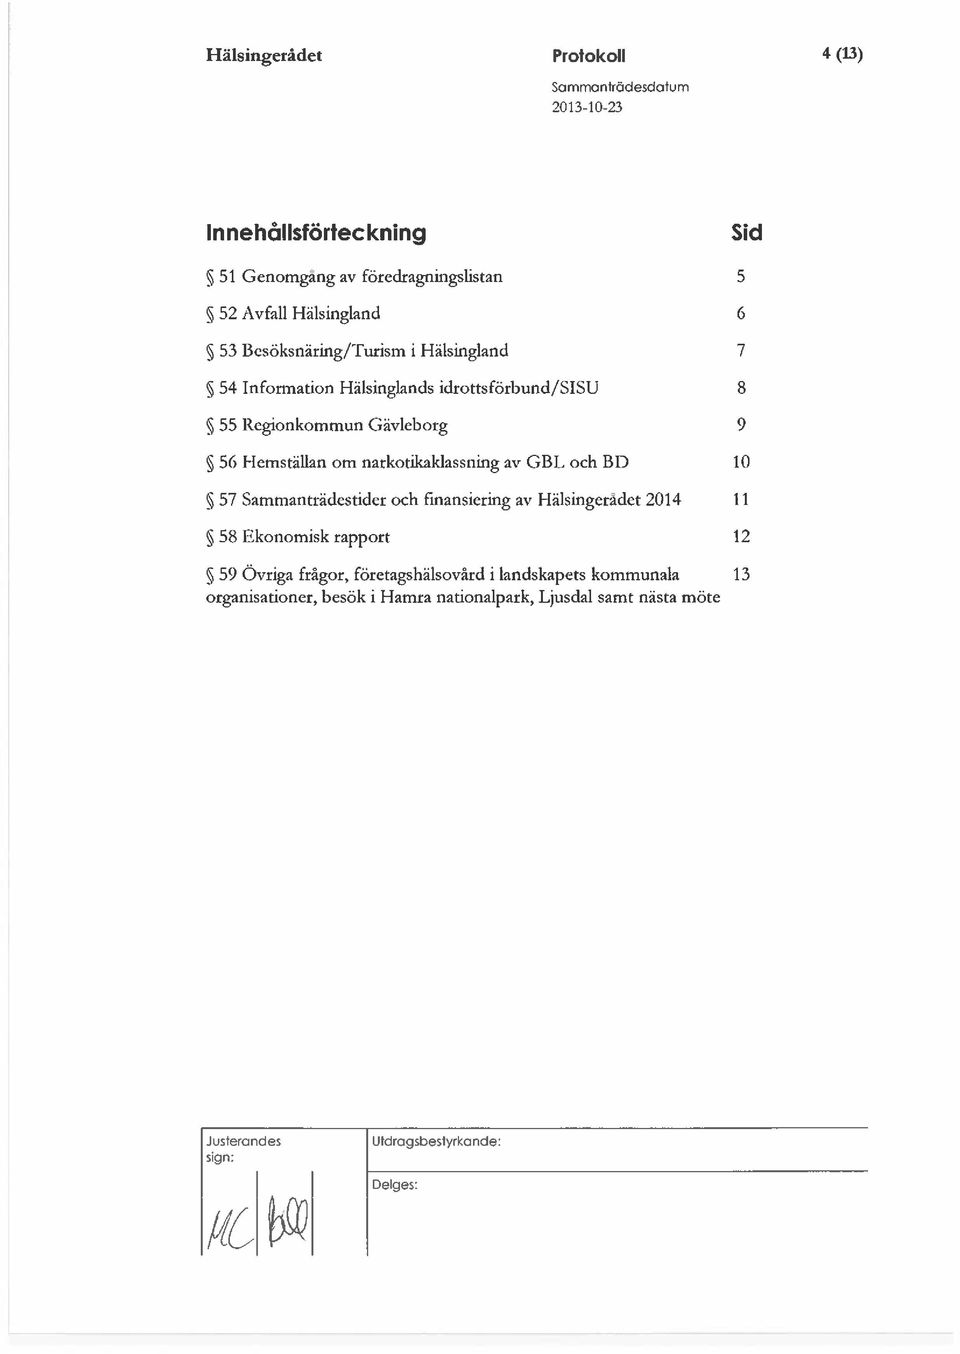 narkotikaklassning av GBL och BD 10 ~ 57 Sammanträdestider och finansiering av Hälsingeradet 2014 11 ~ 58 Ekonomisk rapport 12 59 Övriga